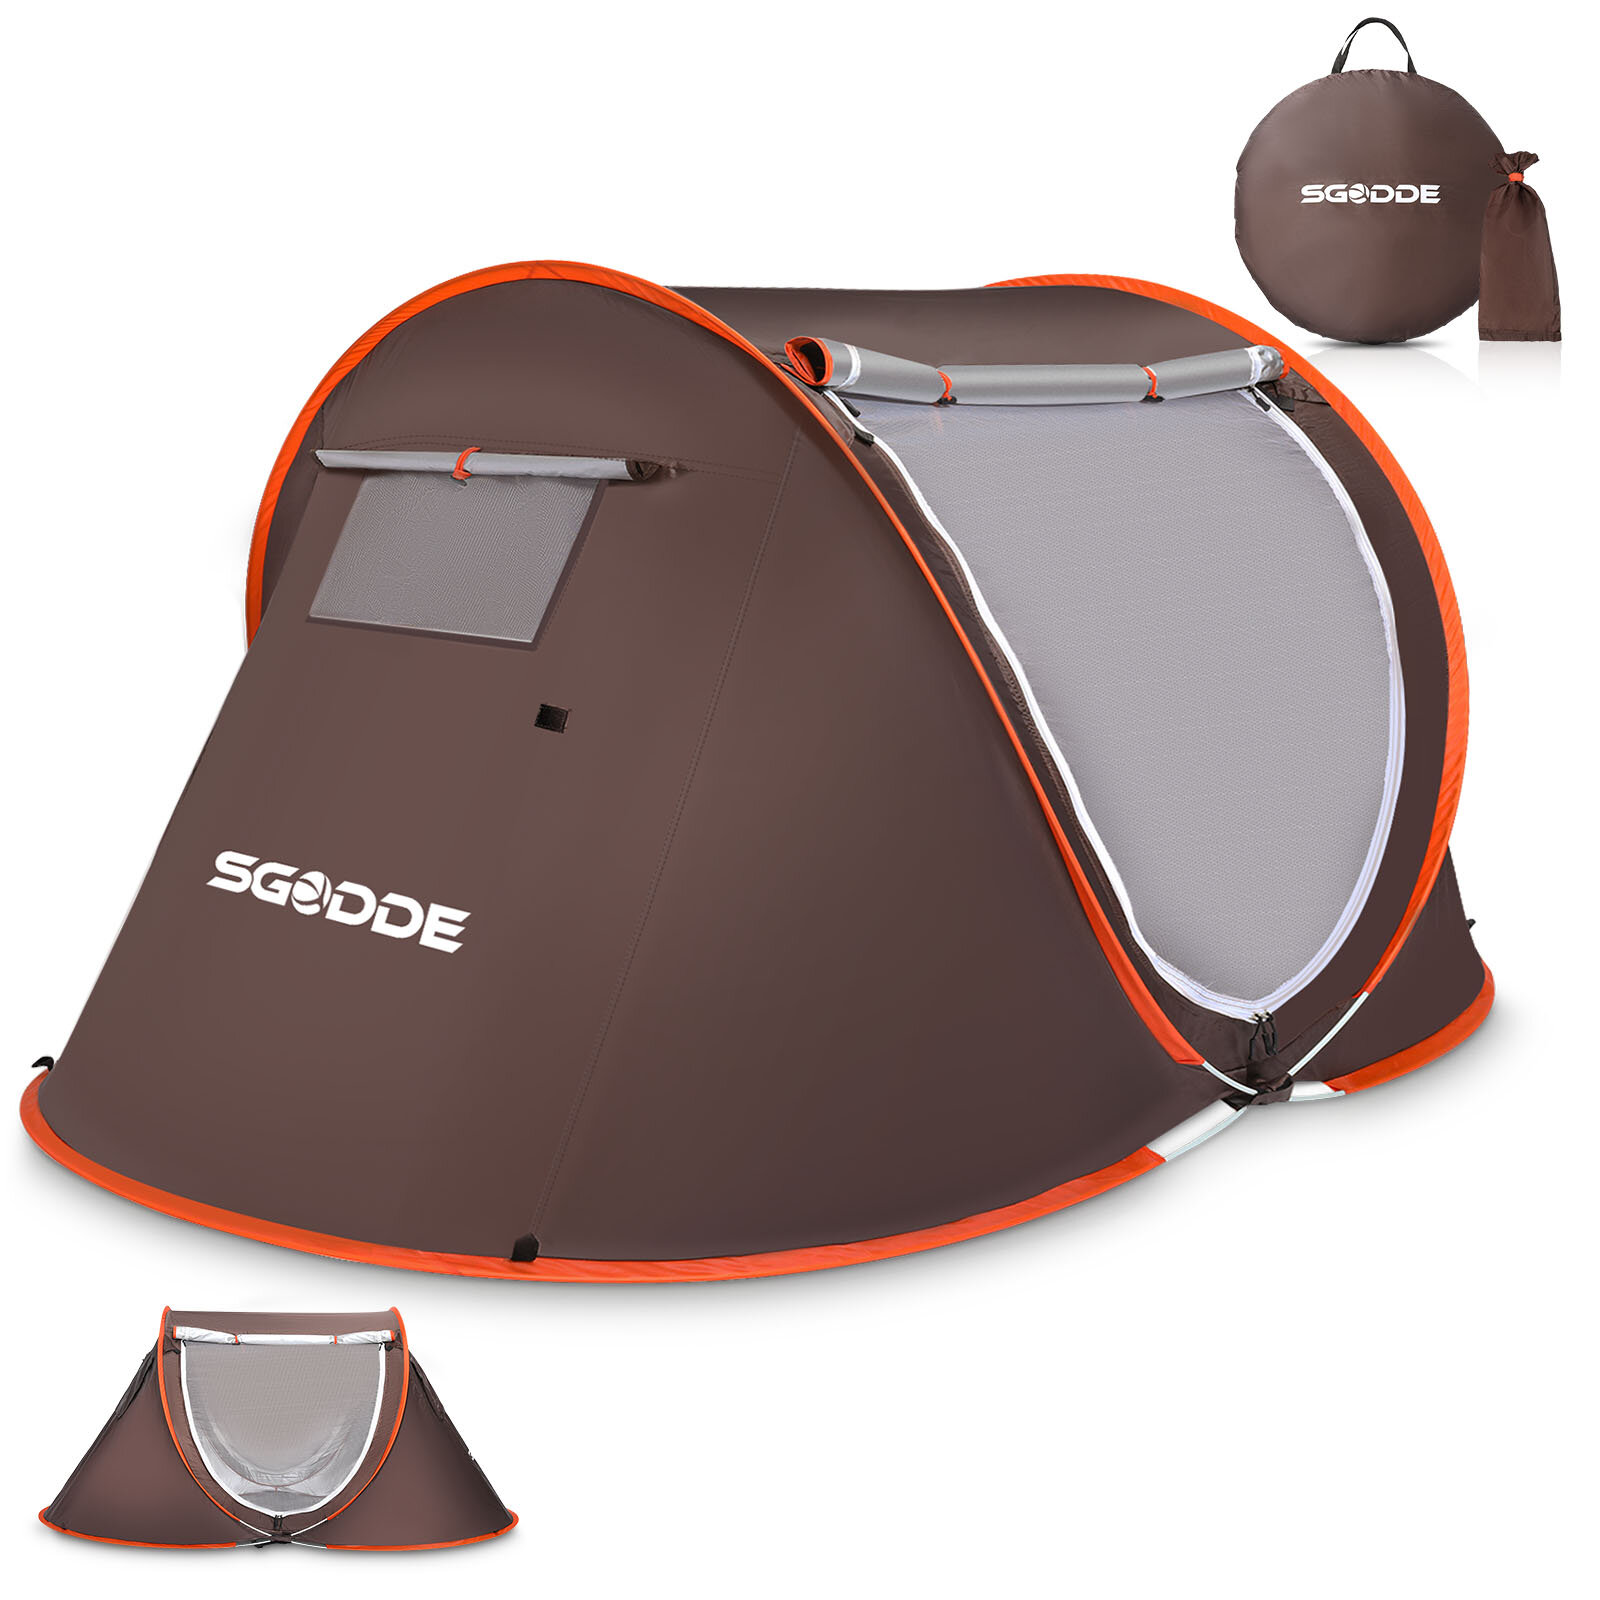 Tente automatique SGODDE pour 2-3 personnes Tente de camping anti-UV Tente imperméable pour l'extérieur Sunshelter